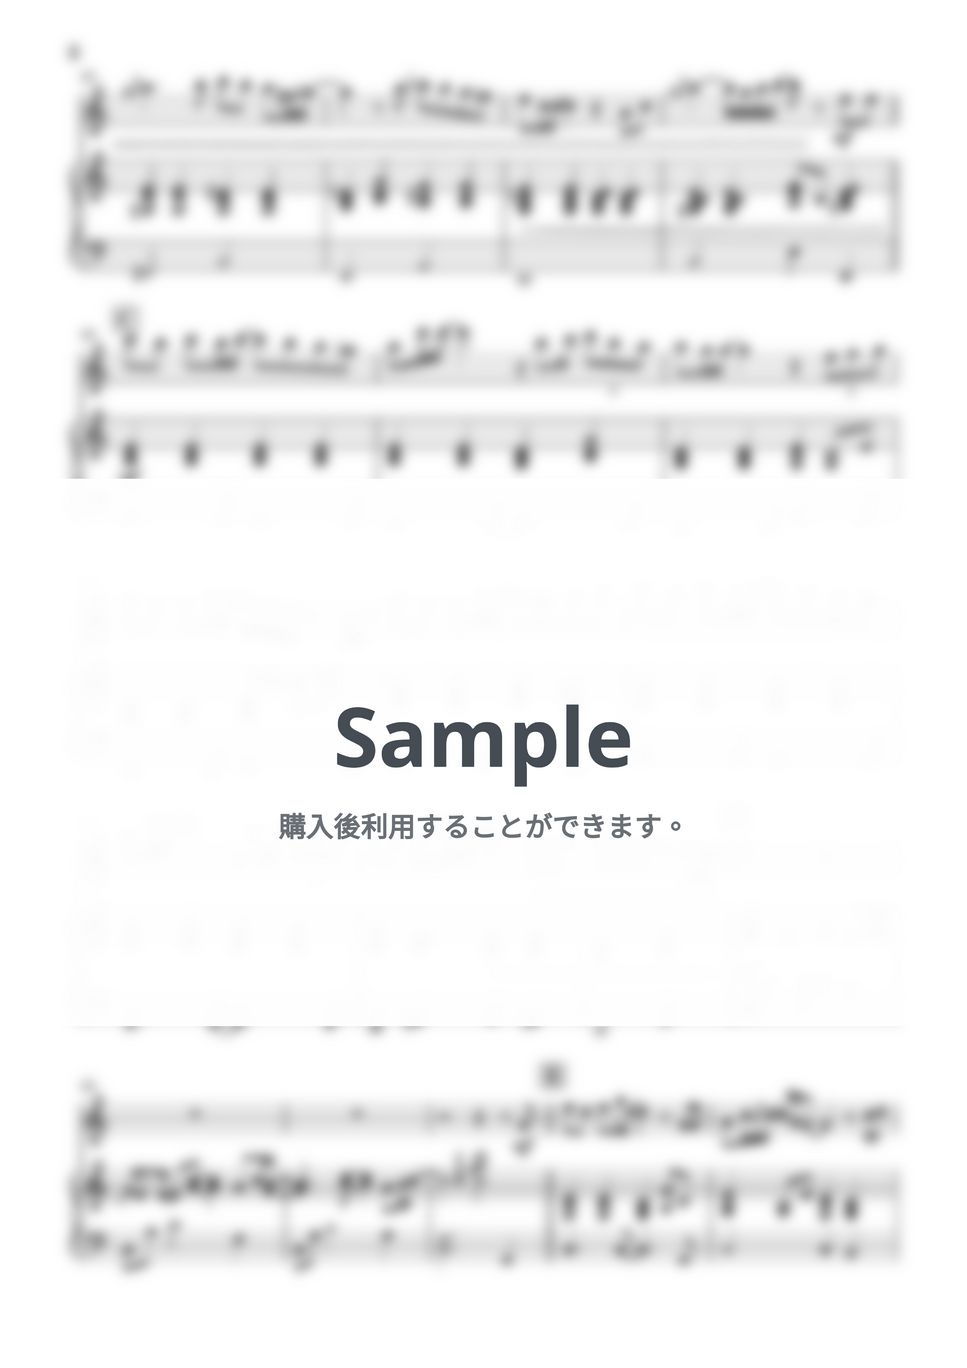 中島美嘉 - 雪の華 (フルート&ピアノ伴奏 Cメジャーver.) by PiaFlu